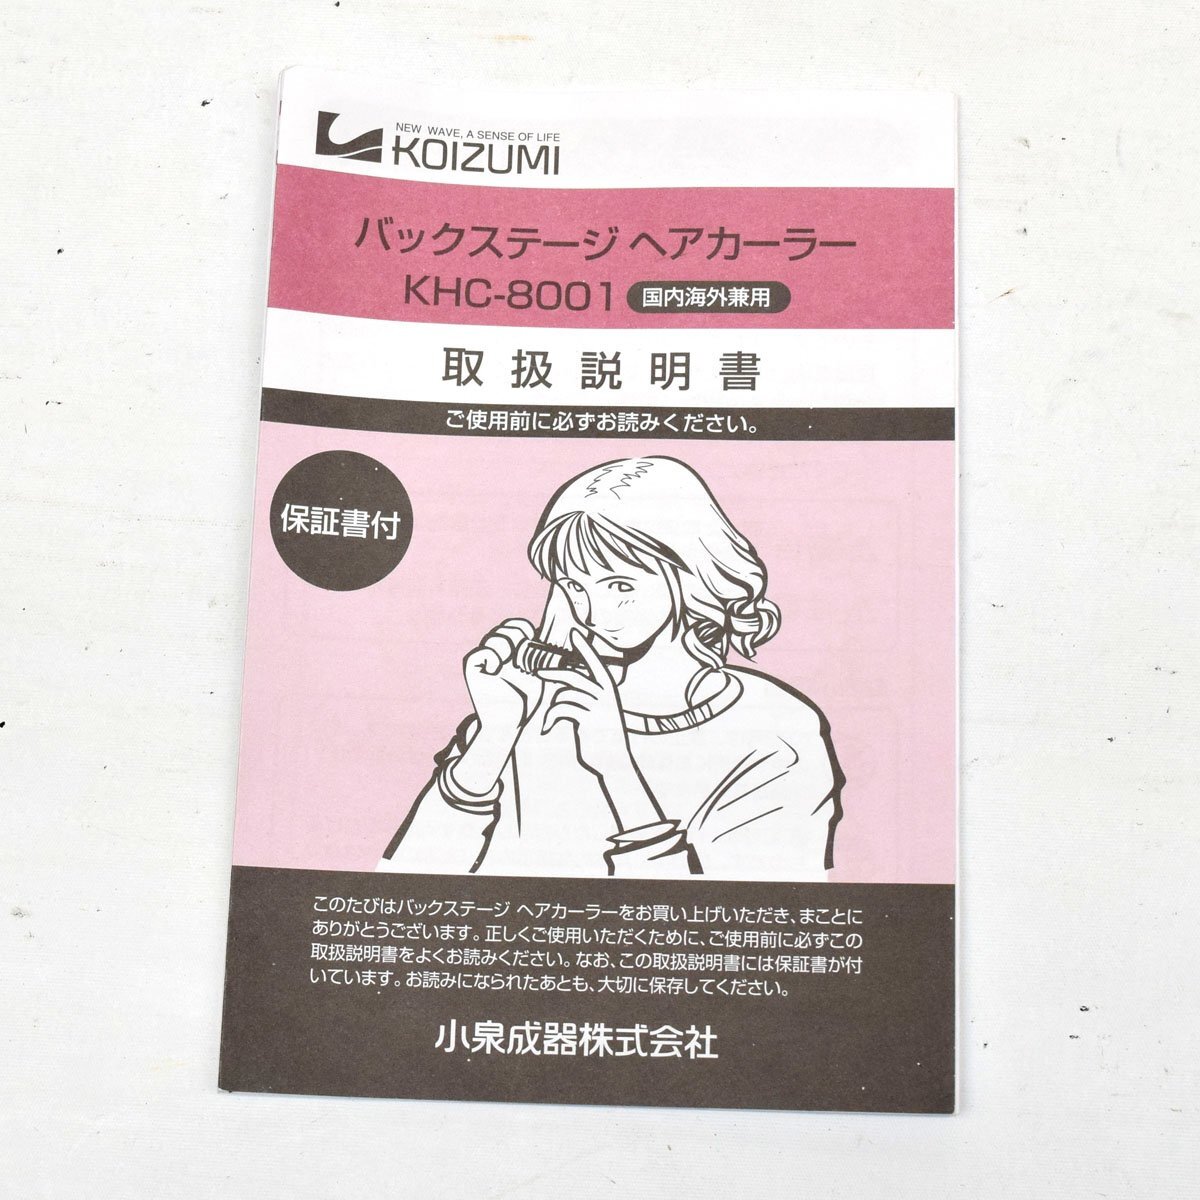 KOIZUMI Koizumi устройство для завивки волос задний stage KHC-8001 инструмент для горячей завивики коробка нет [S207476]